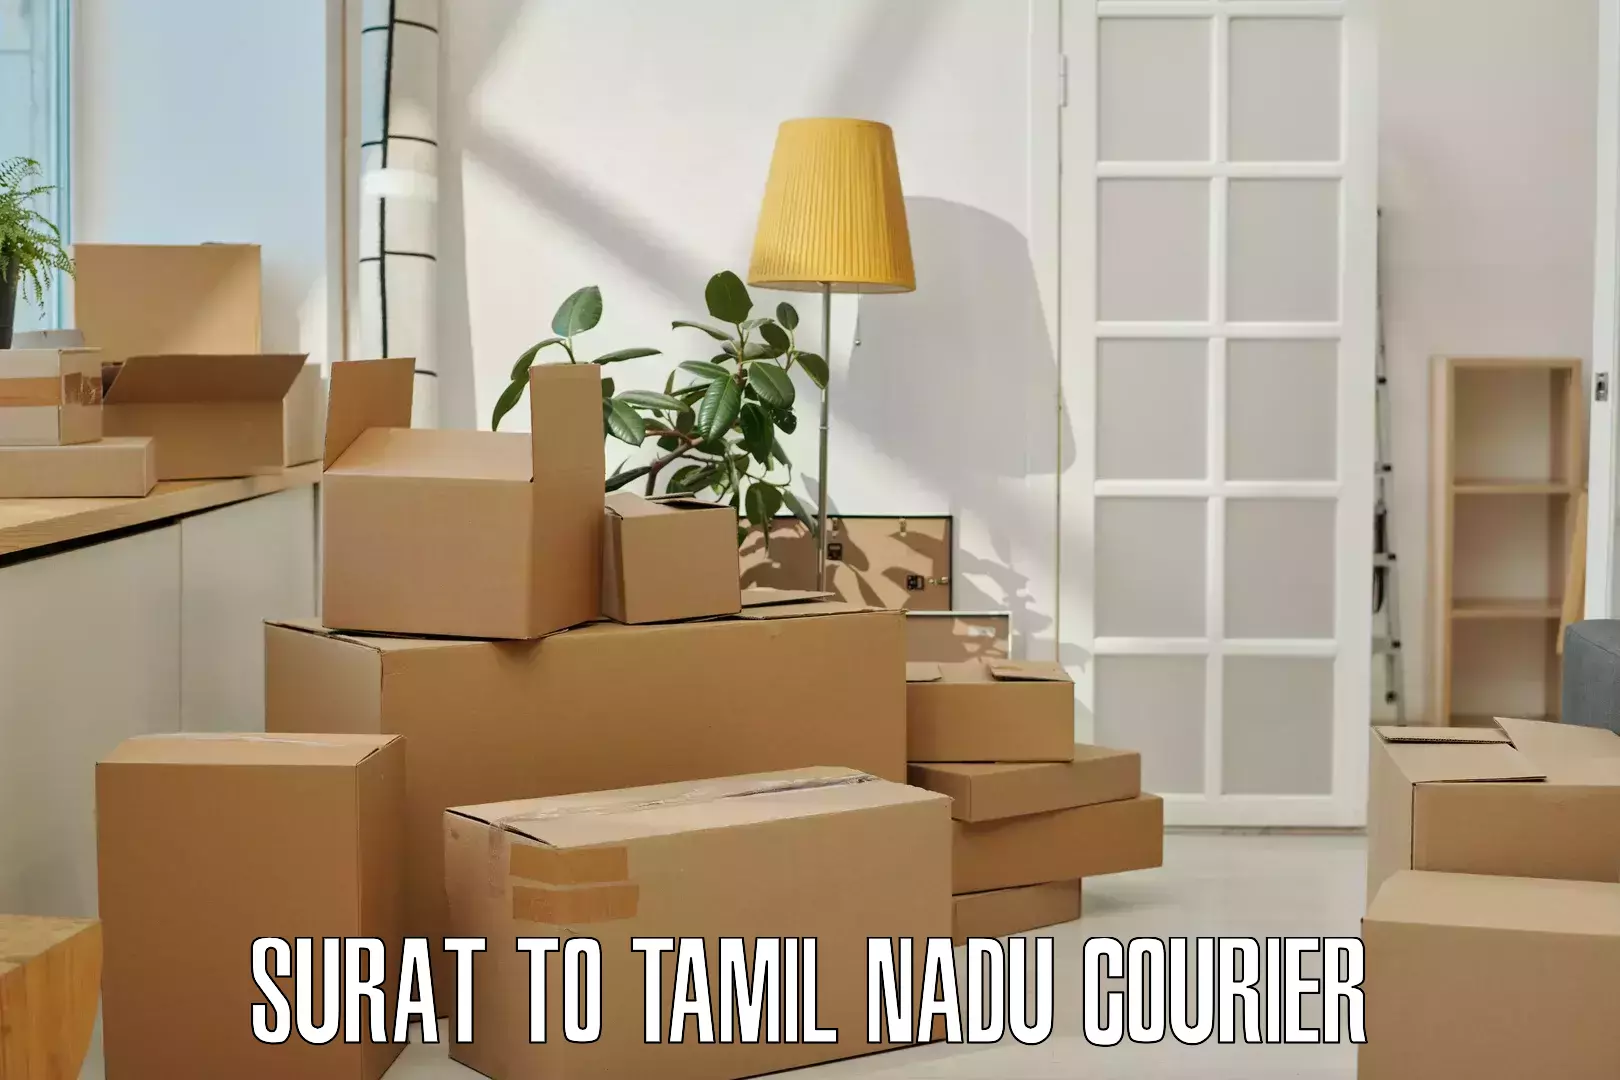 Door-to-door freight service Surat to Tamil Nadu